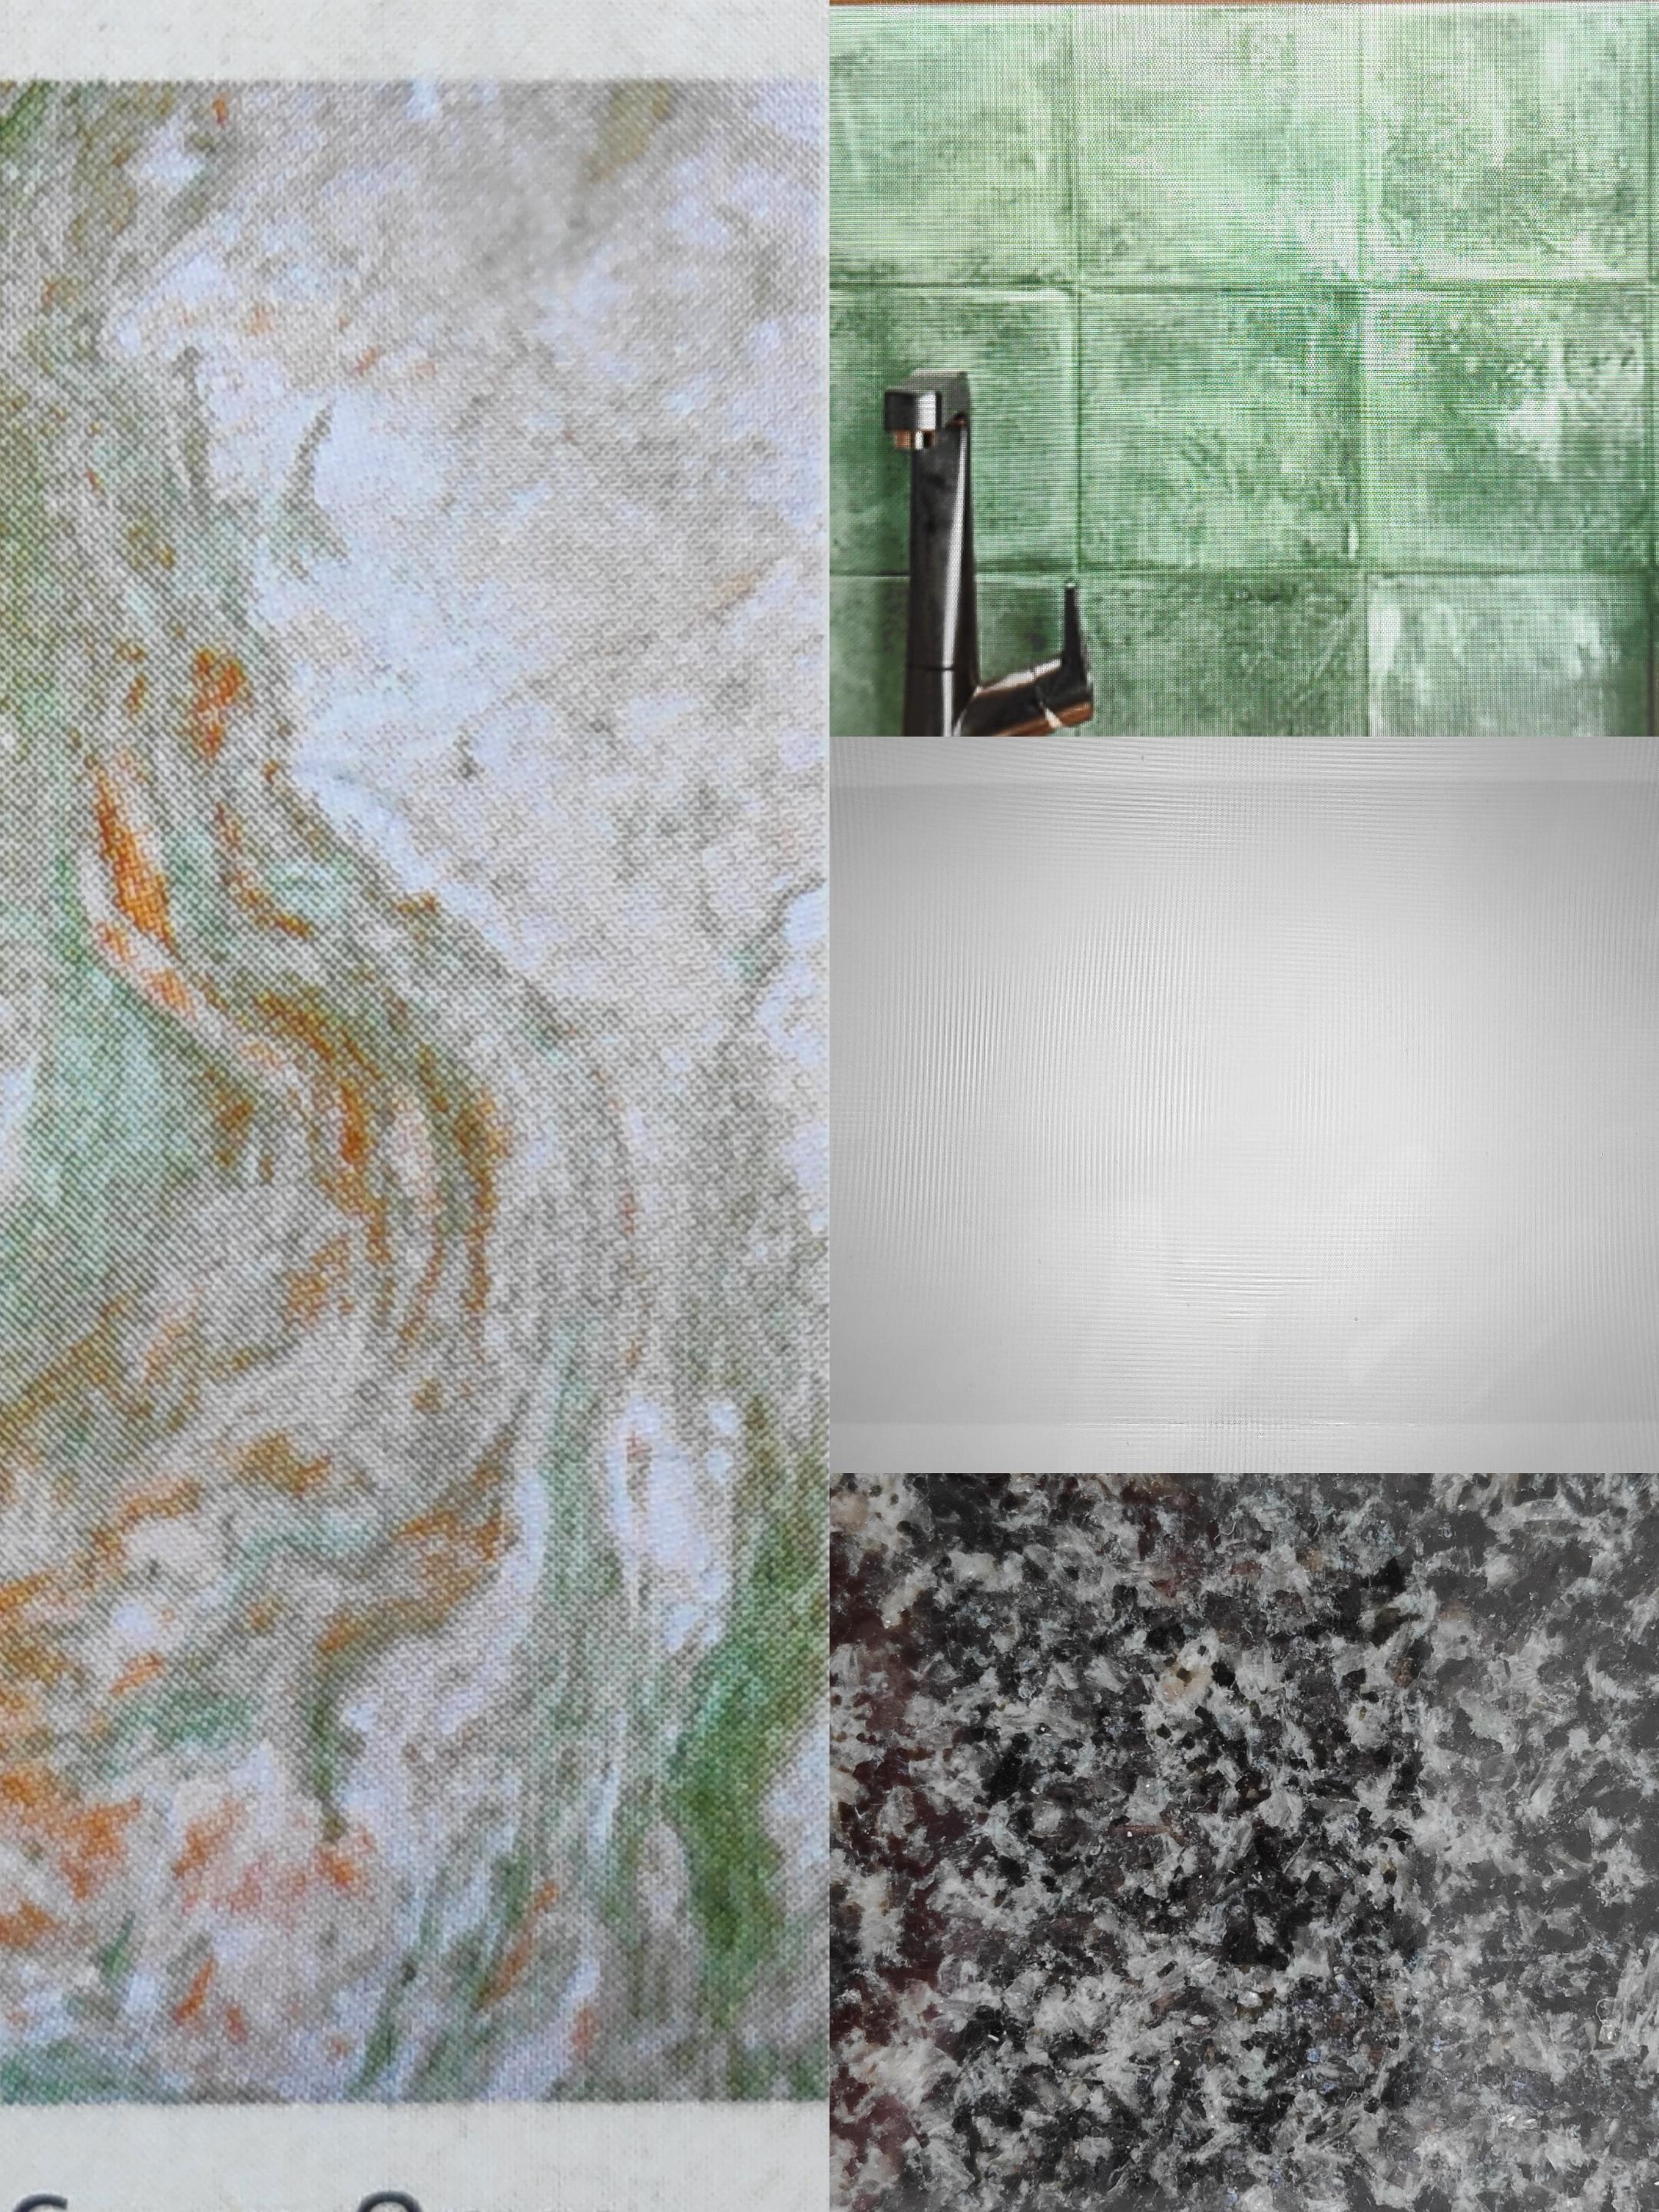 .Vielleicht.
#Farbkonzept #Sanierung #Badezimmer #moodboard #Naturstein #Granit #Farbakzente #Bad #Holzhaus #70er